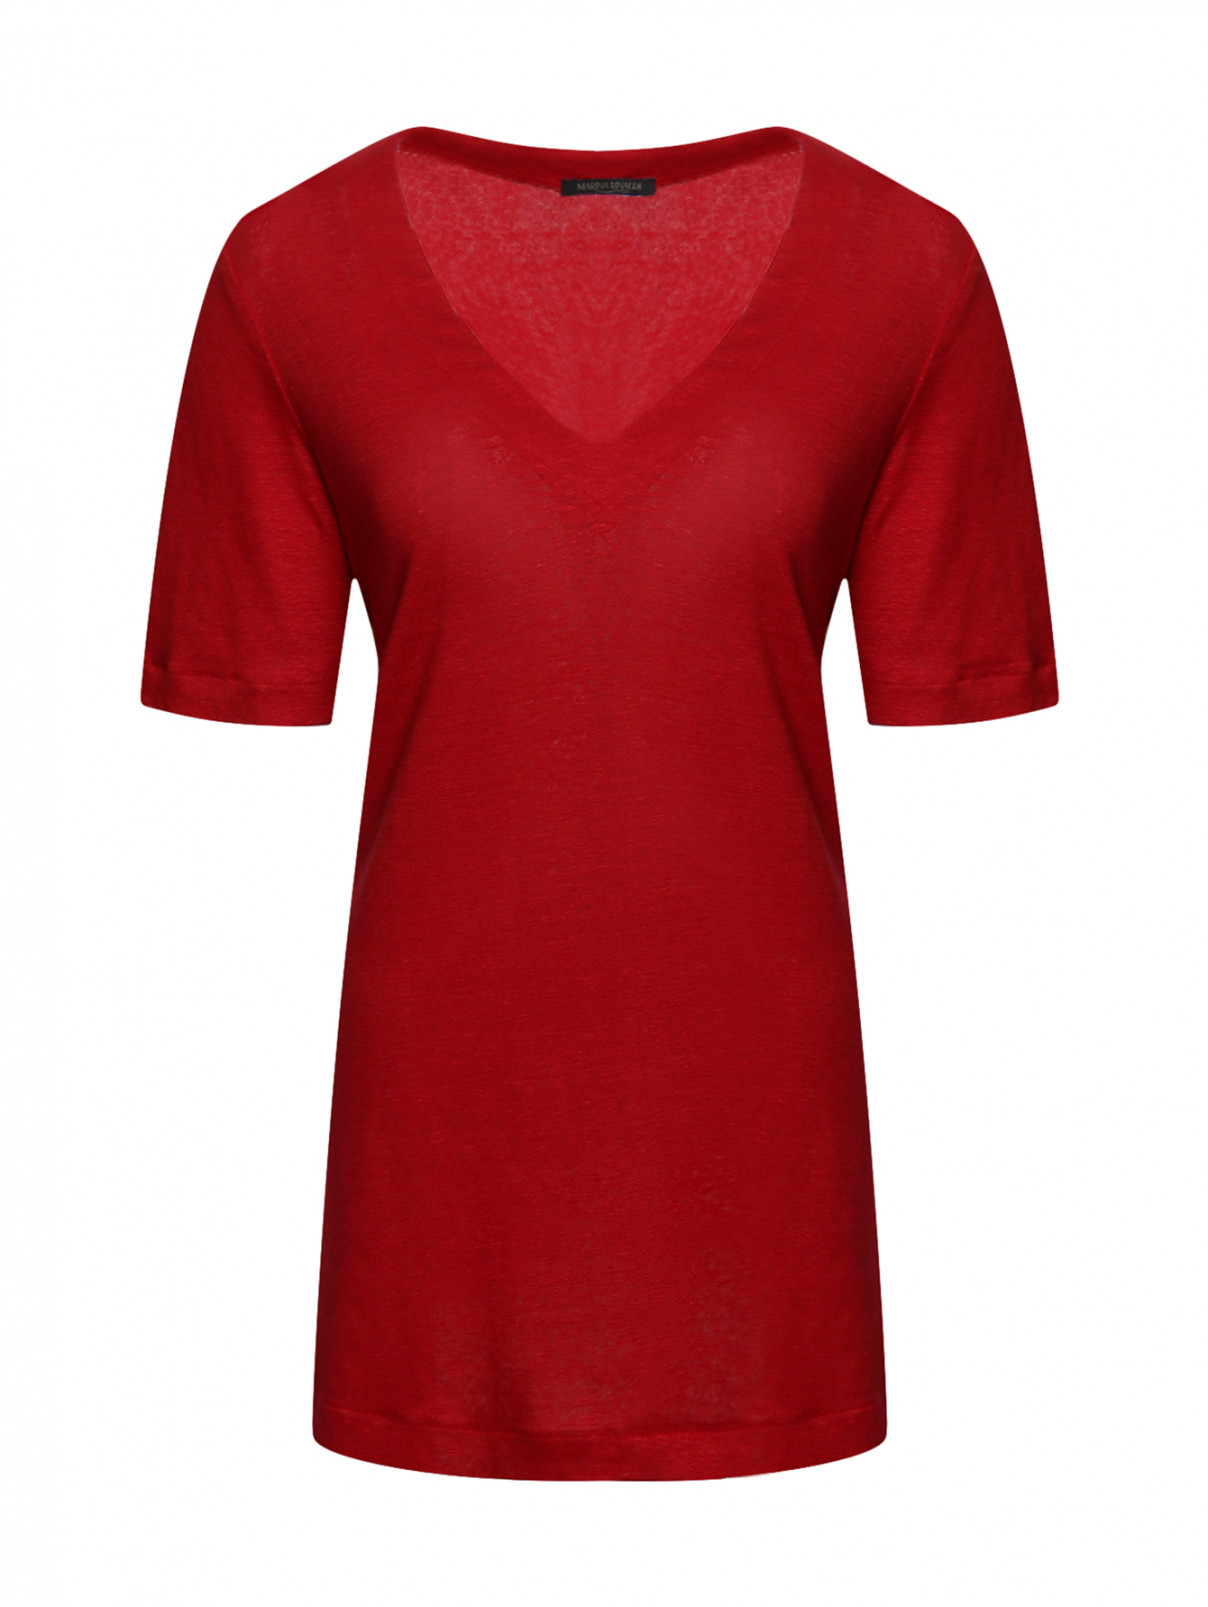 Джемпер из льна с v-вырезом Marina Rinaldi  –  Общий вид  – Цвет:  Красный